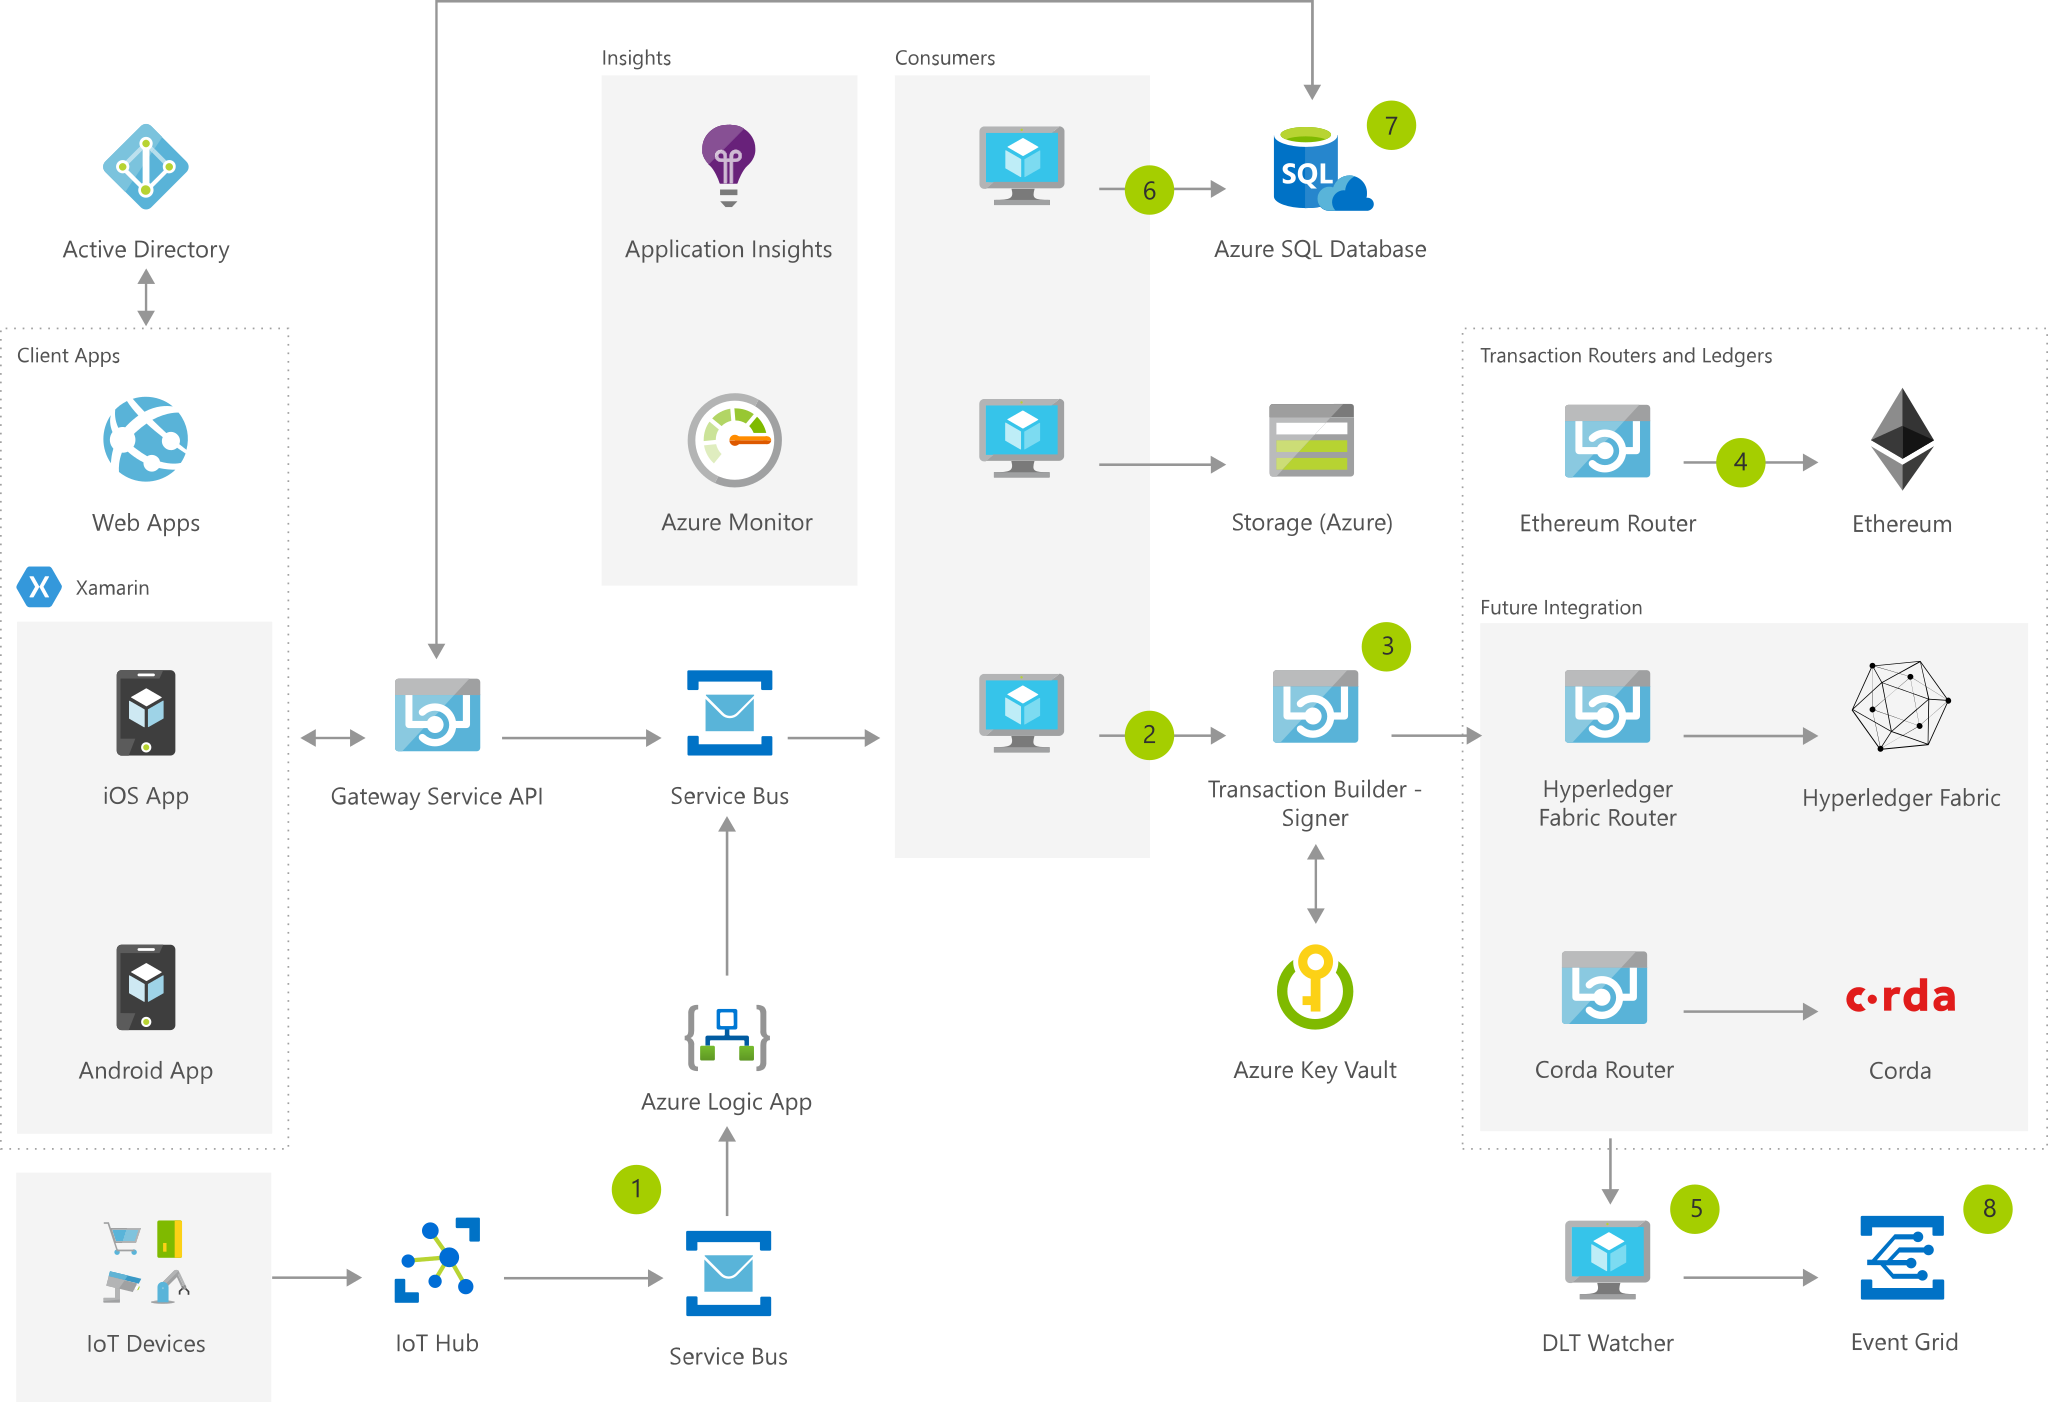 Diagramme d’architecture montrant les interactions entre des appareils IoT et un hub, les données échangées entre le courtier de messages et le générateur de transactions, puis entre Blockchain et Event Grid avant leur utilisation par les consommateurs.